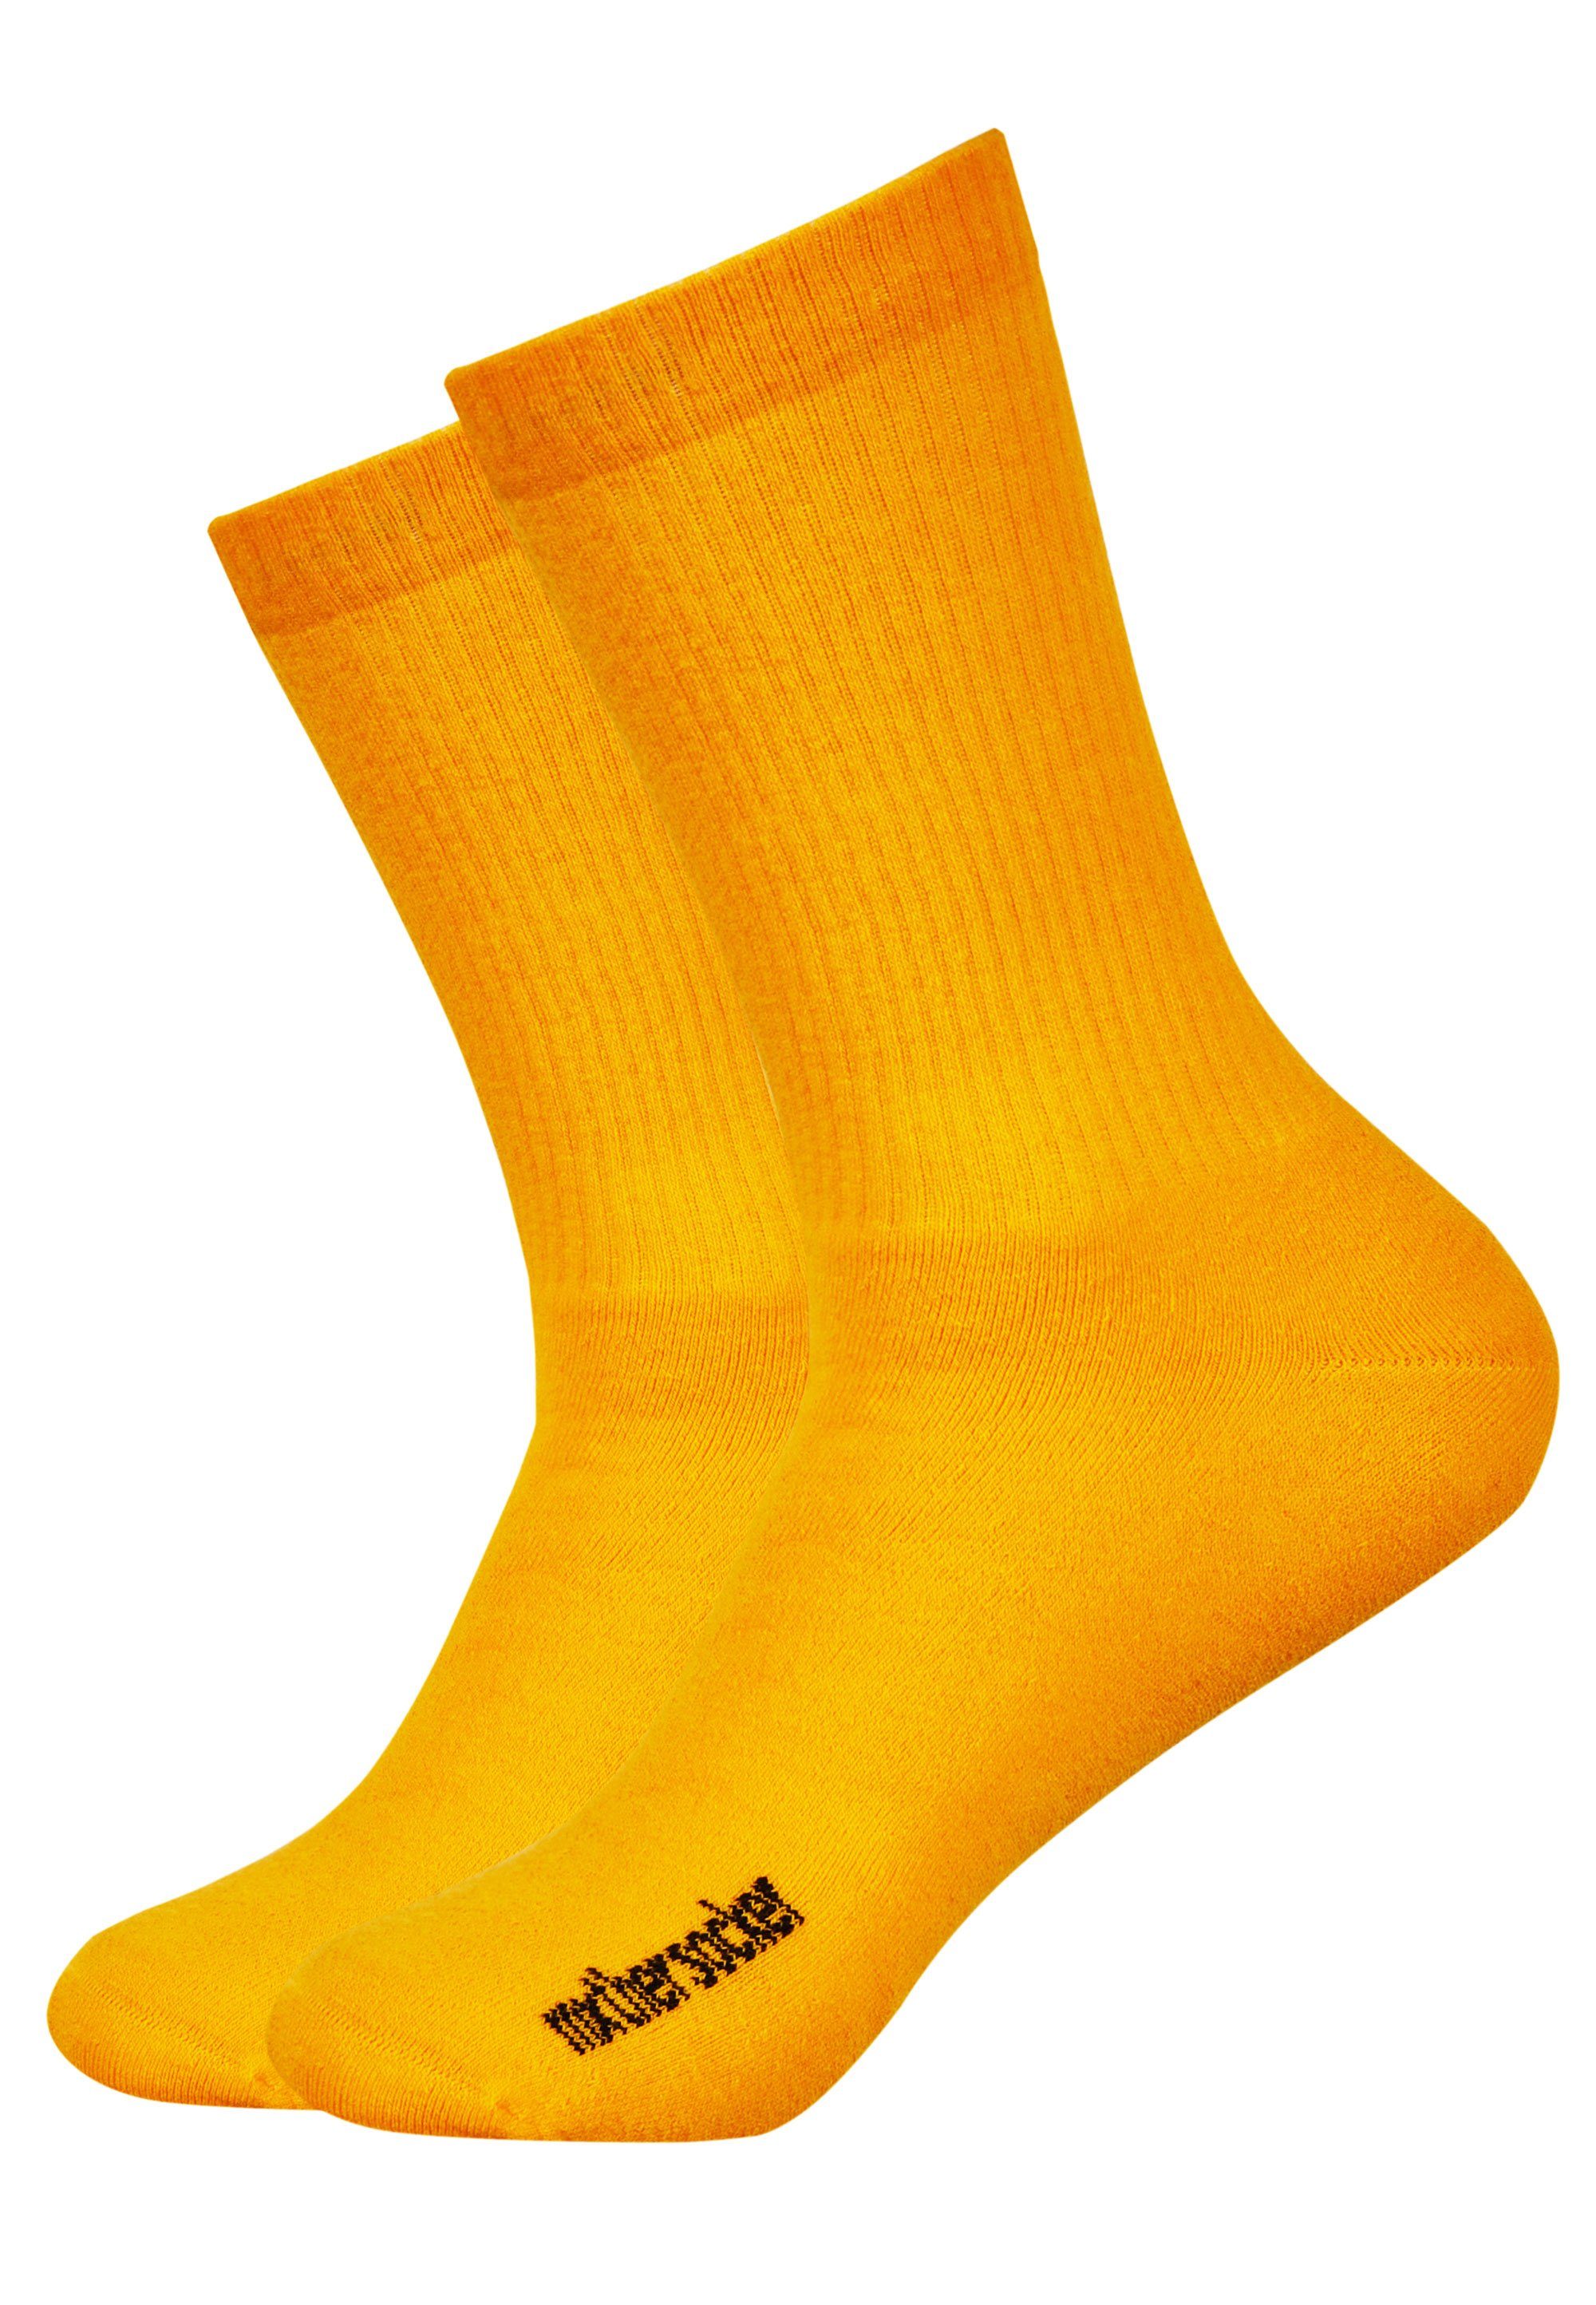 Farben in modernen Mxthersocker Socken (5-Paar)